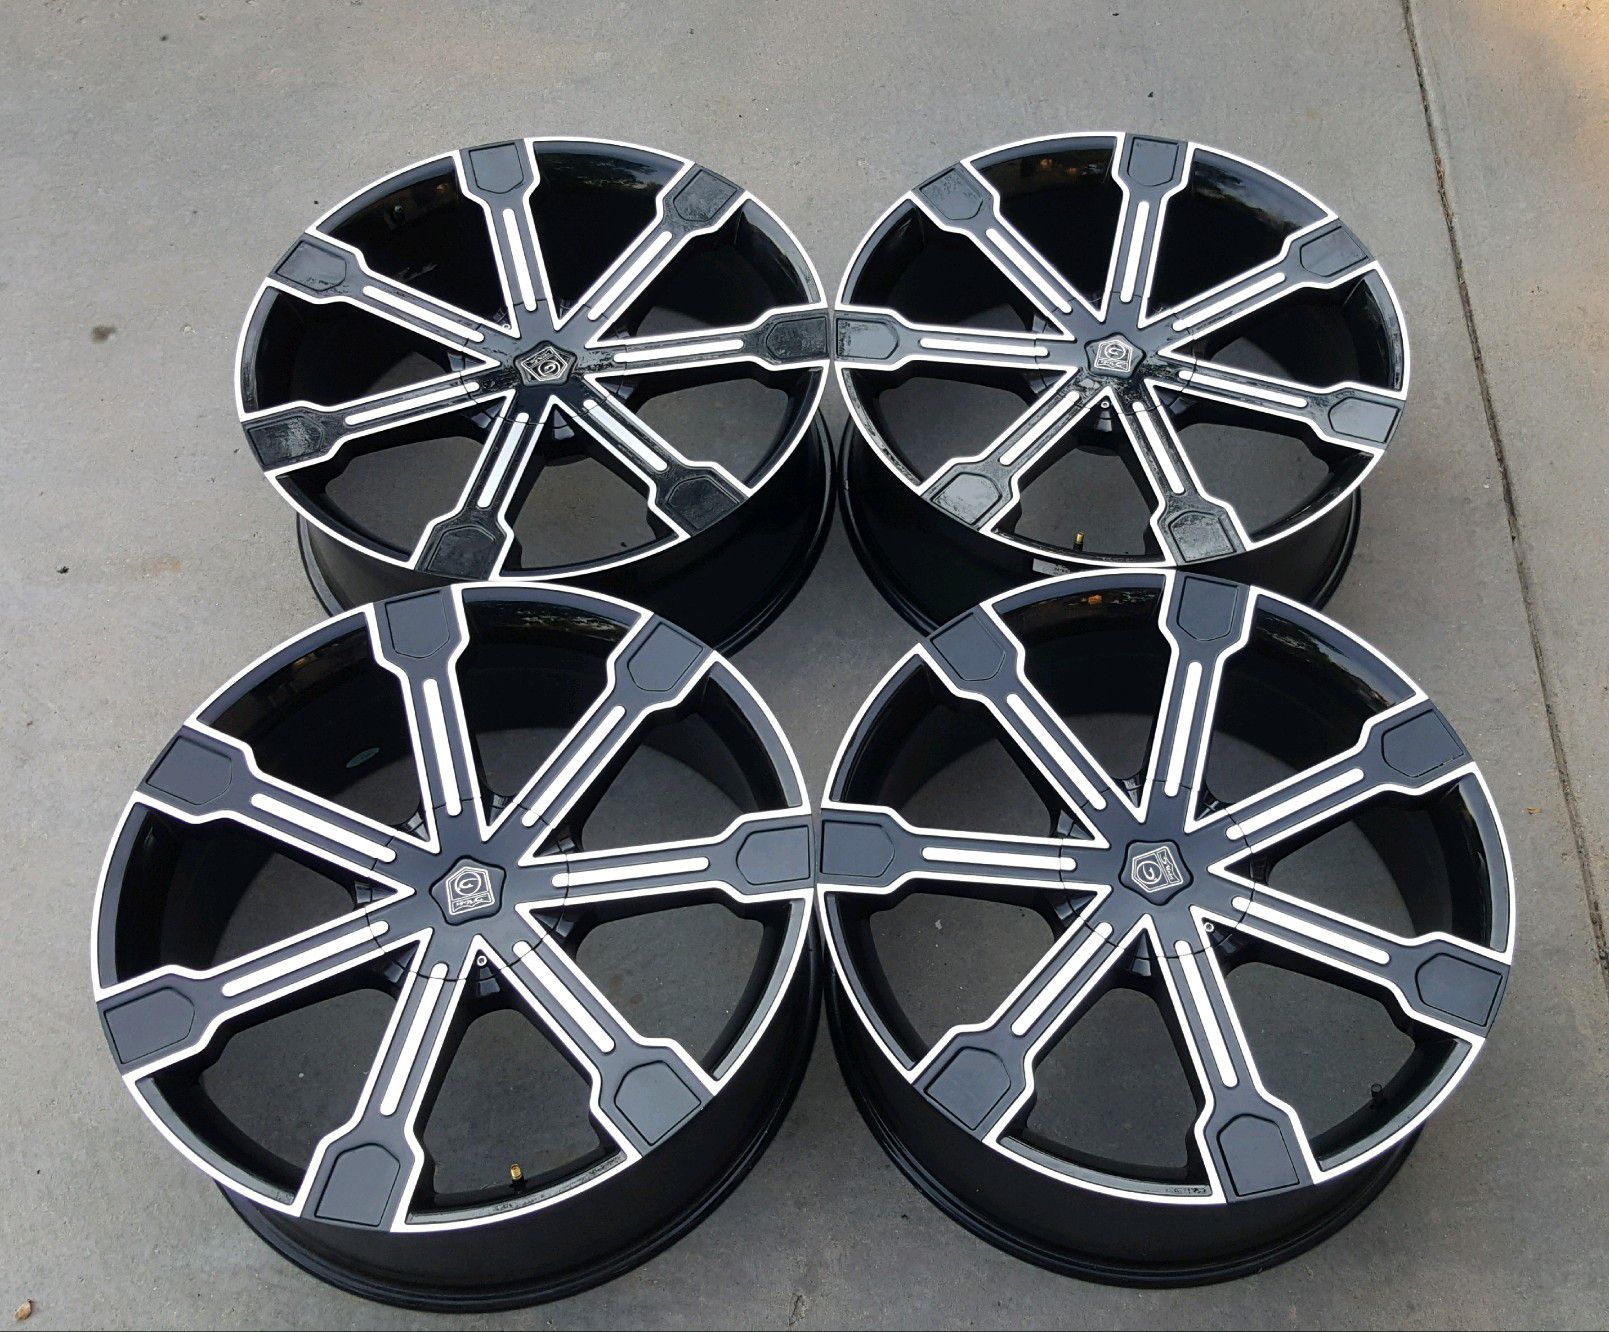 24" wheels Dodge Ram 1500 Ford F150 black rims 5x5.5 5x139.7 5x135 mm bolt pattern